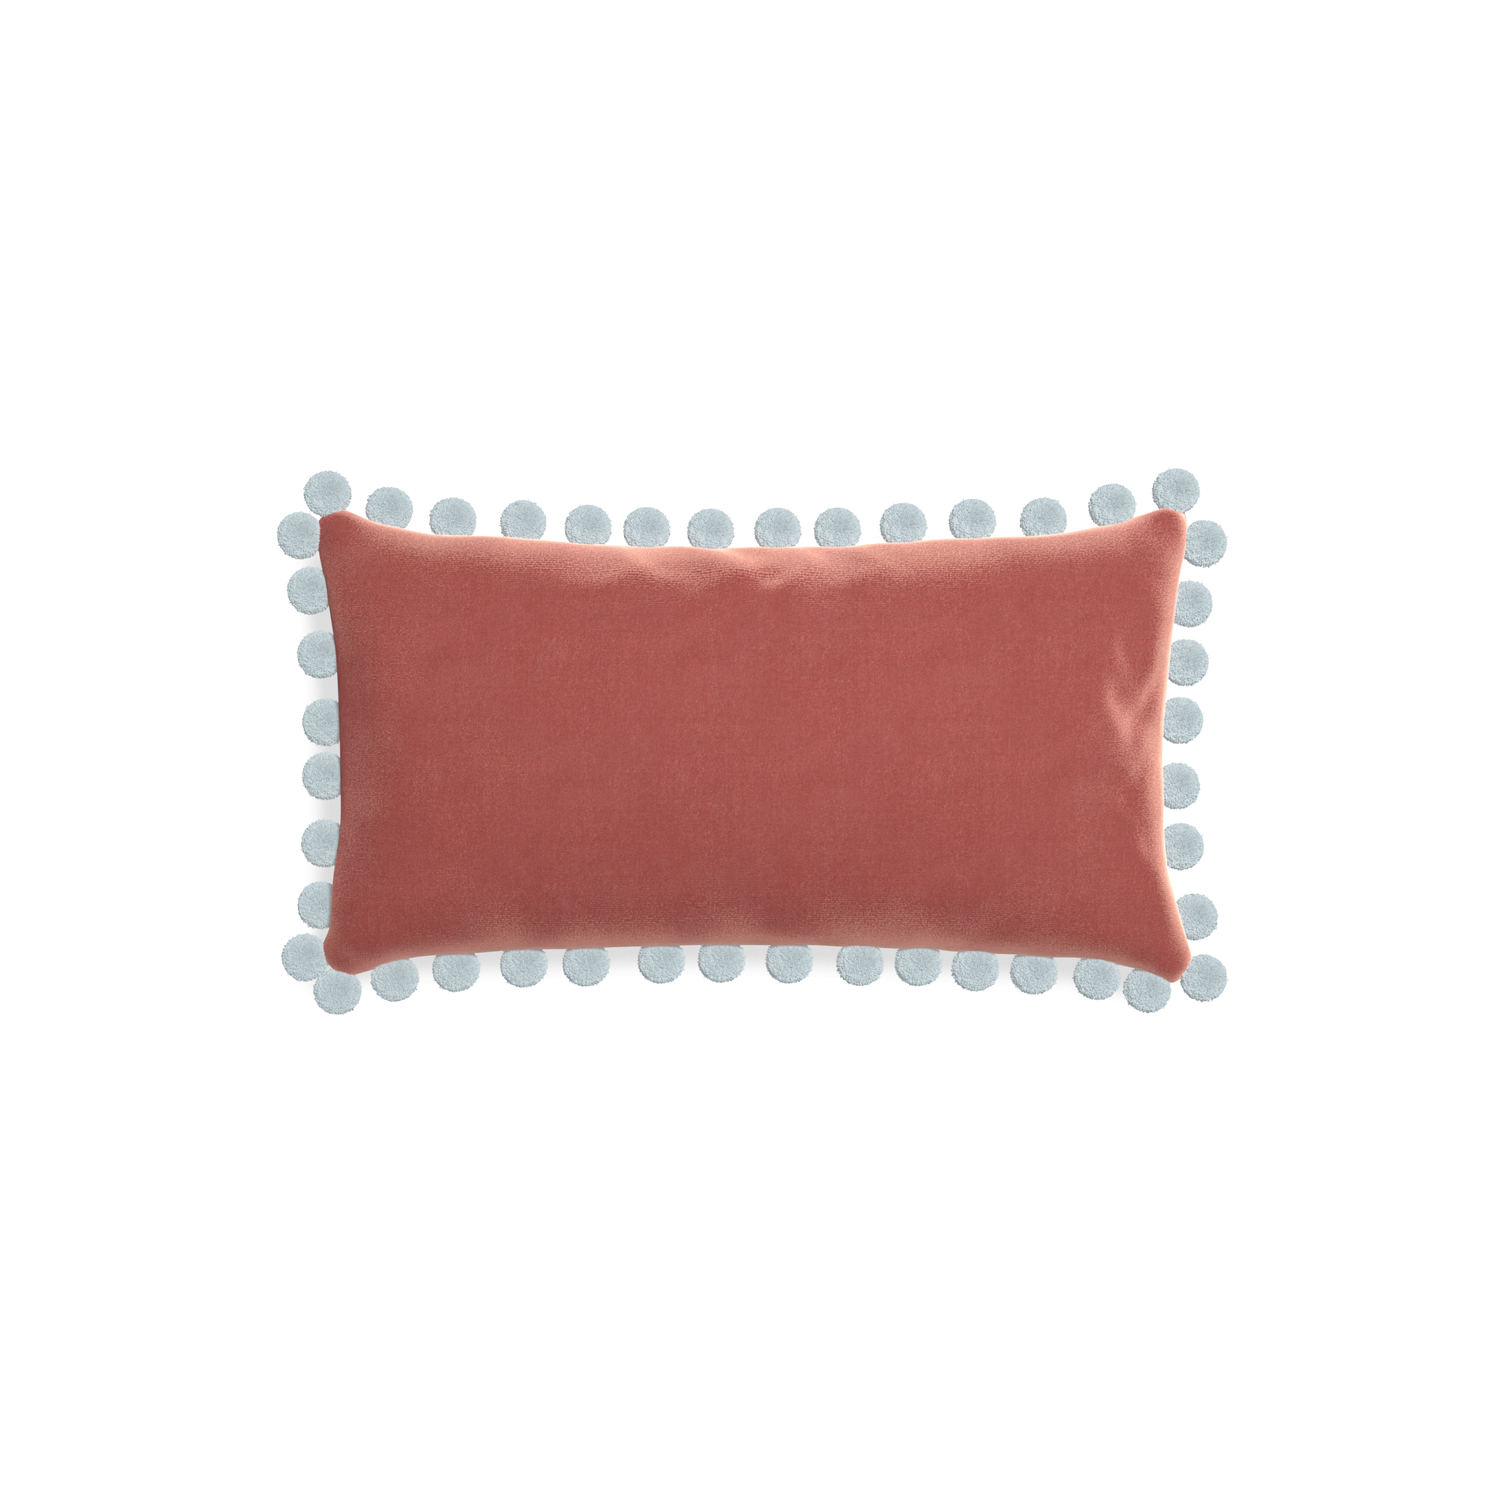 rectangle coral velvet pillow with light blue pom poms 